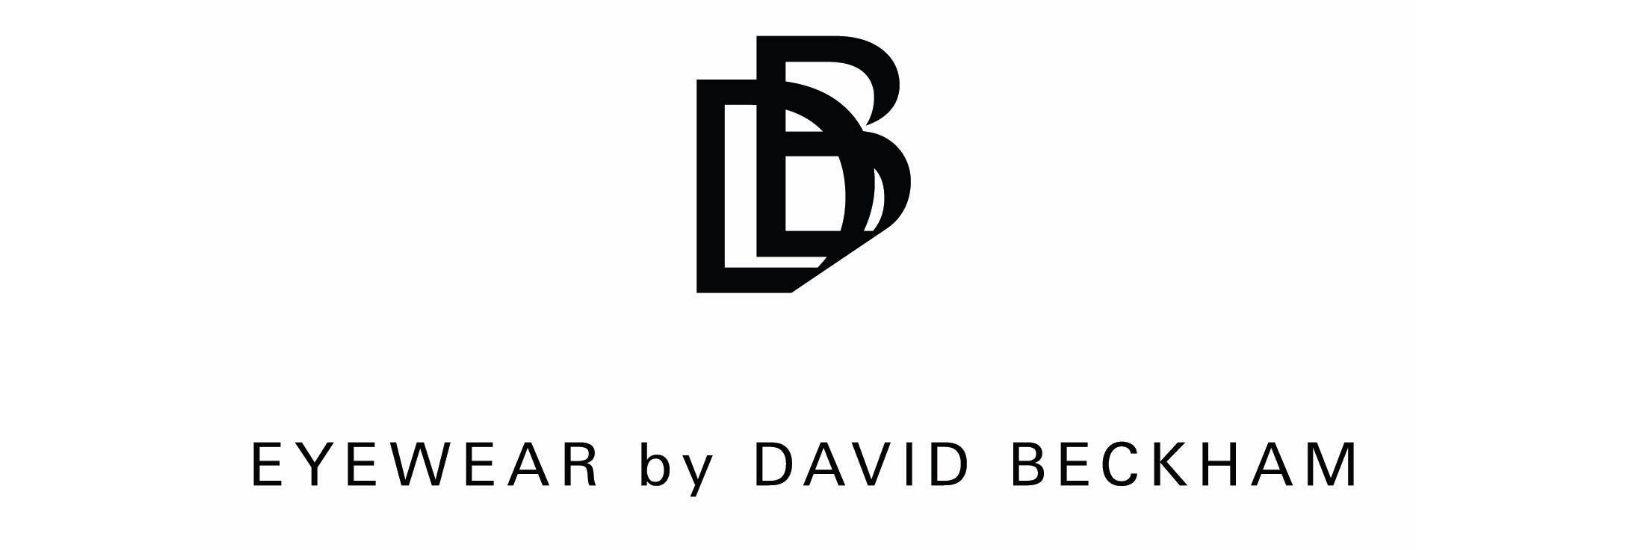 David Beckham logo image